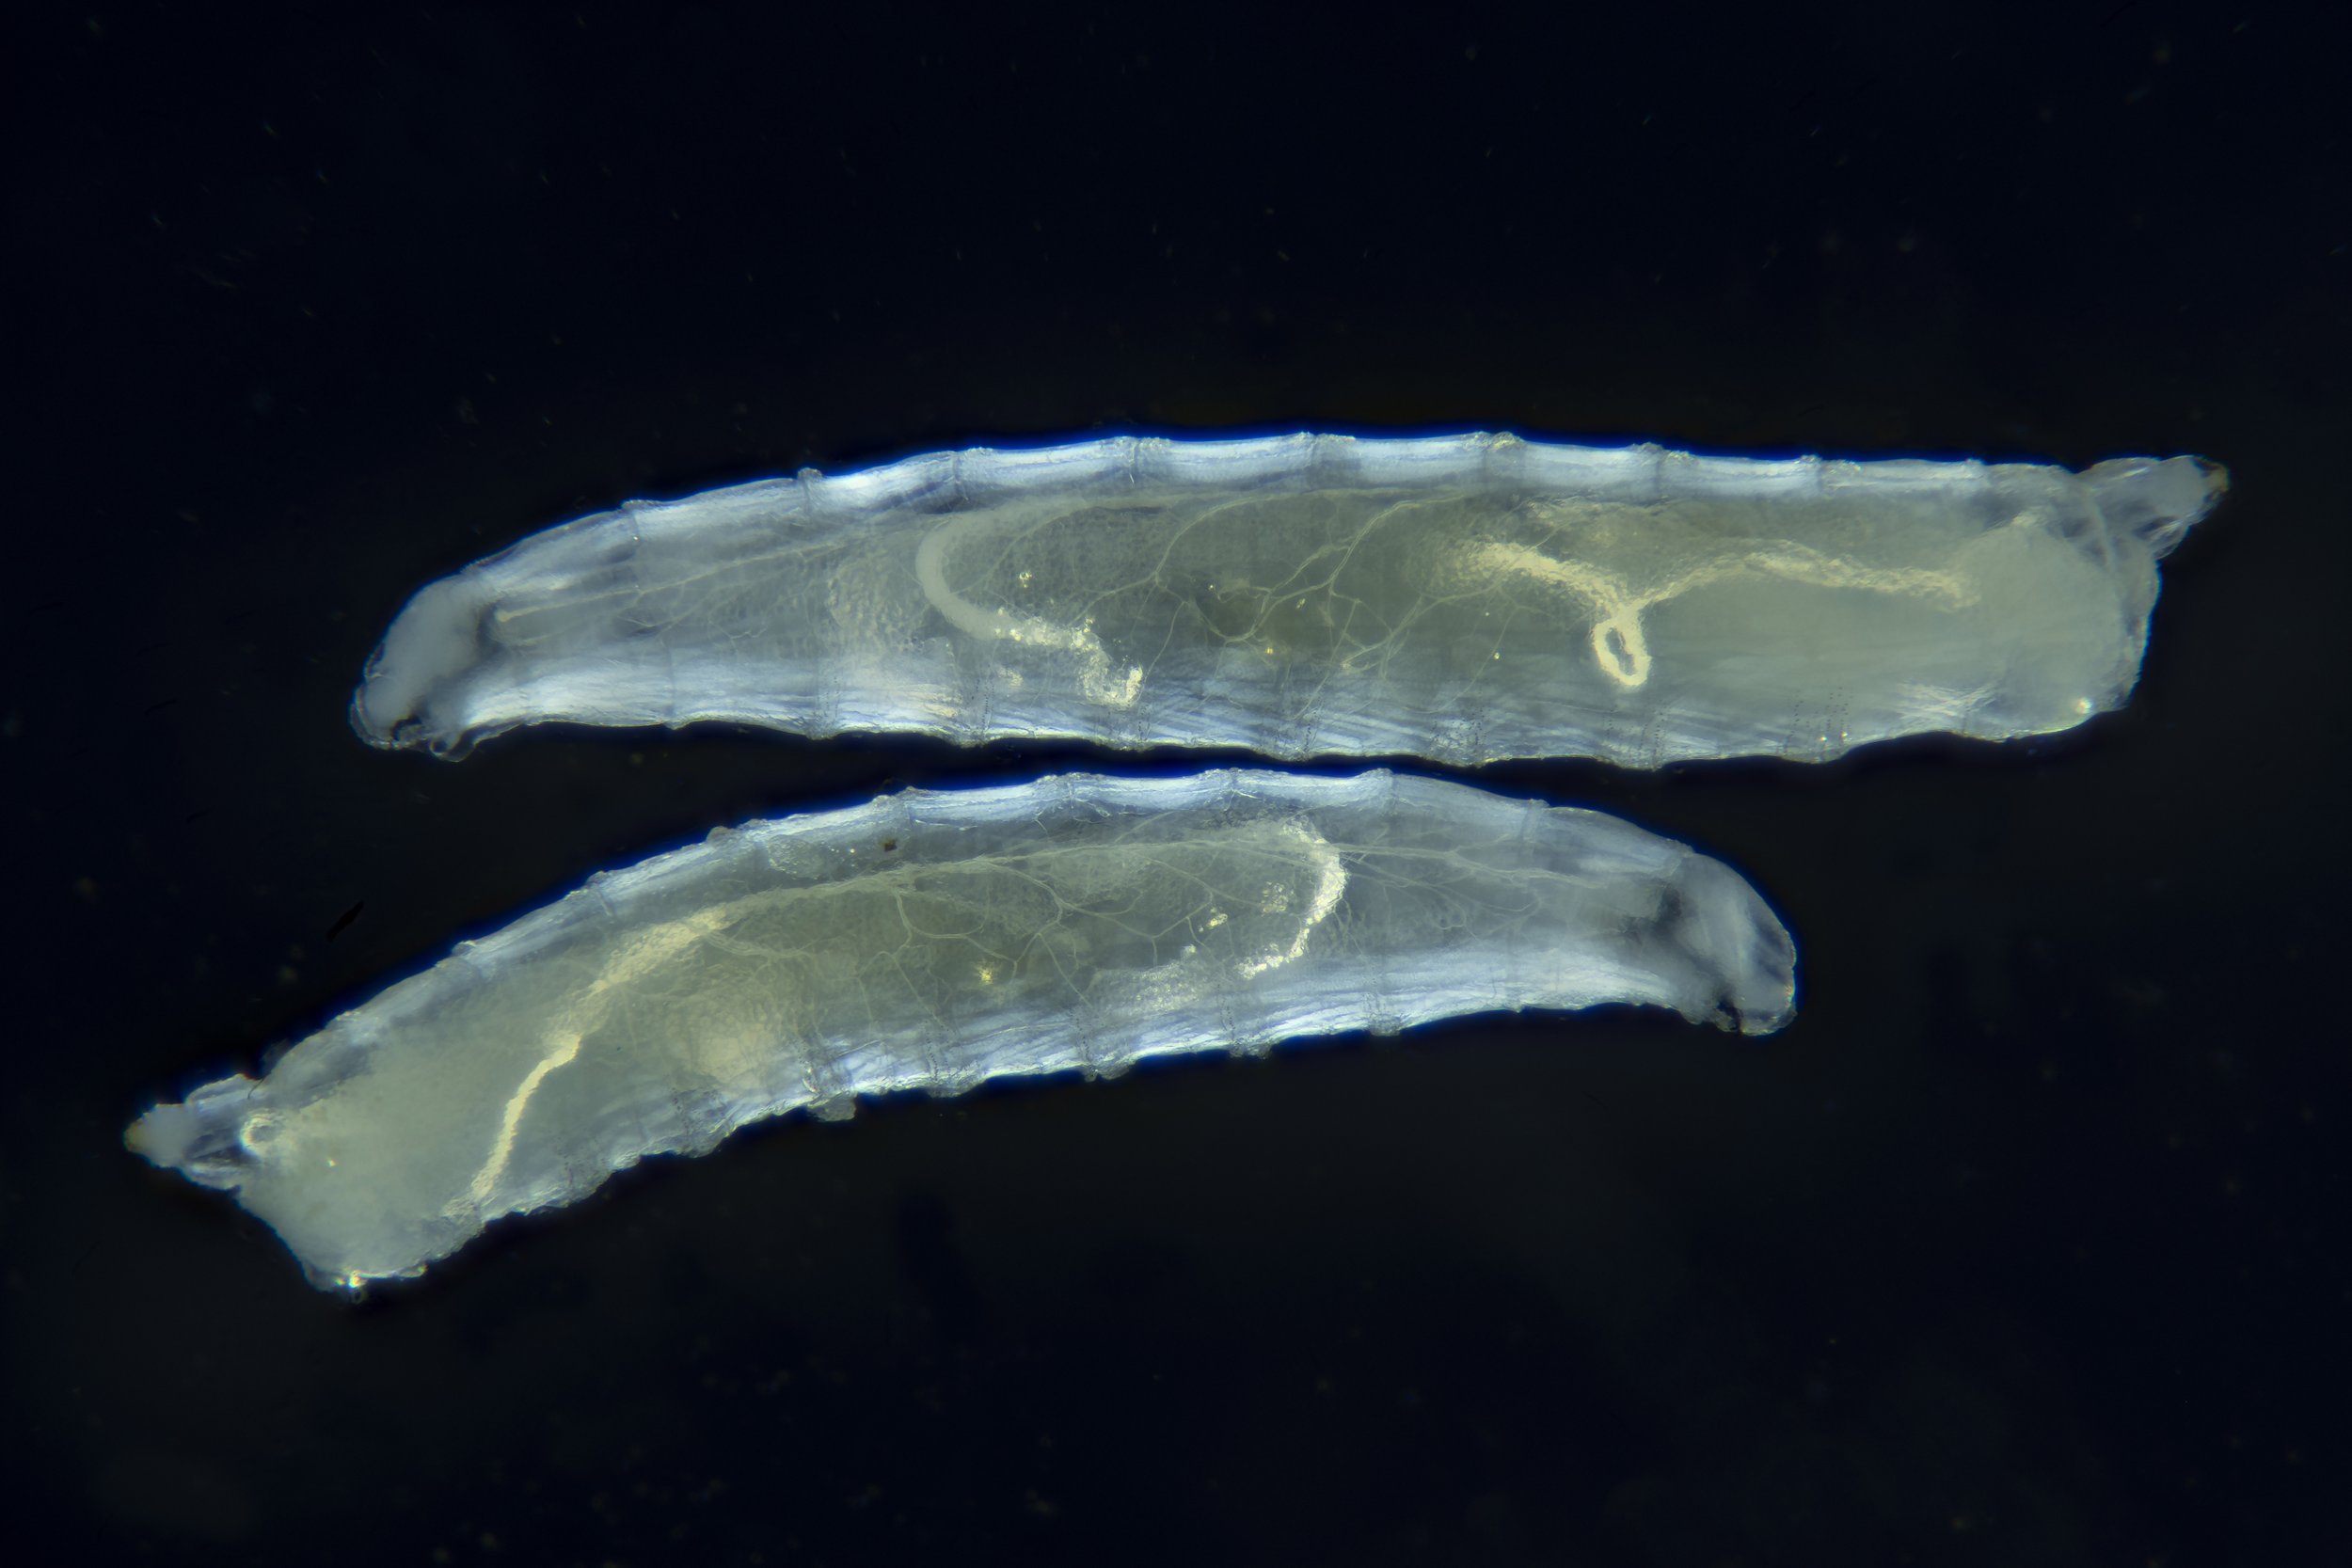   Drosophila melanogaster  larvae, cross polarized light 